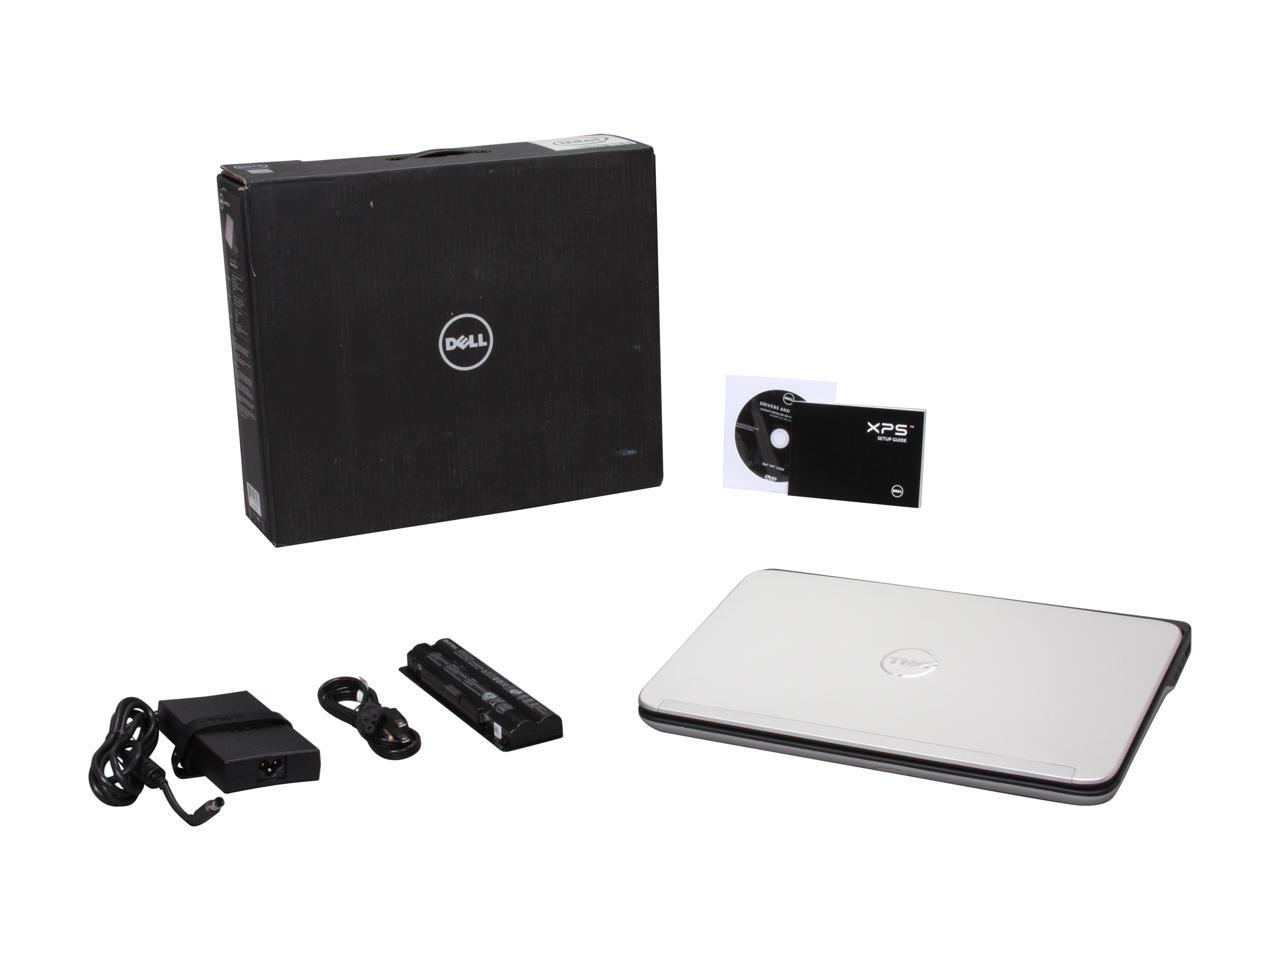 DELL Laptop XPS 15 (L502x) Intel Core i5 2nd Gen 2410M (2.30GHz) 6GB